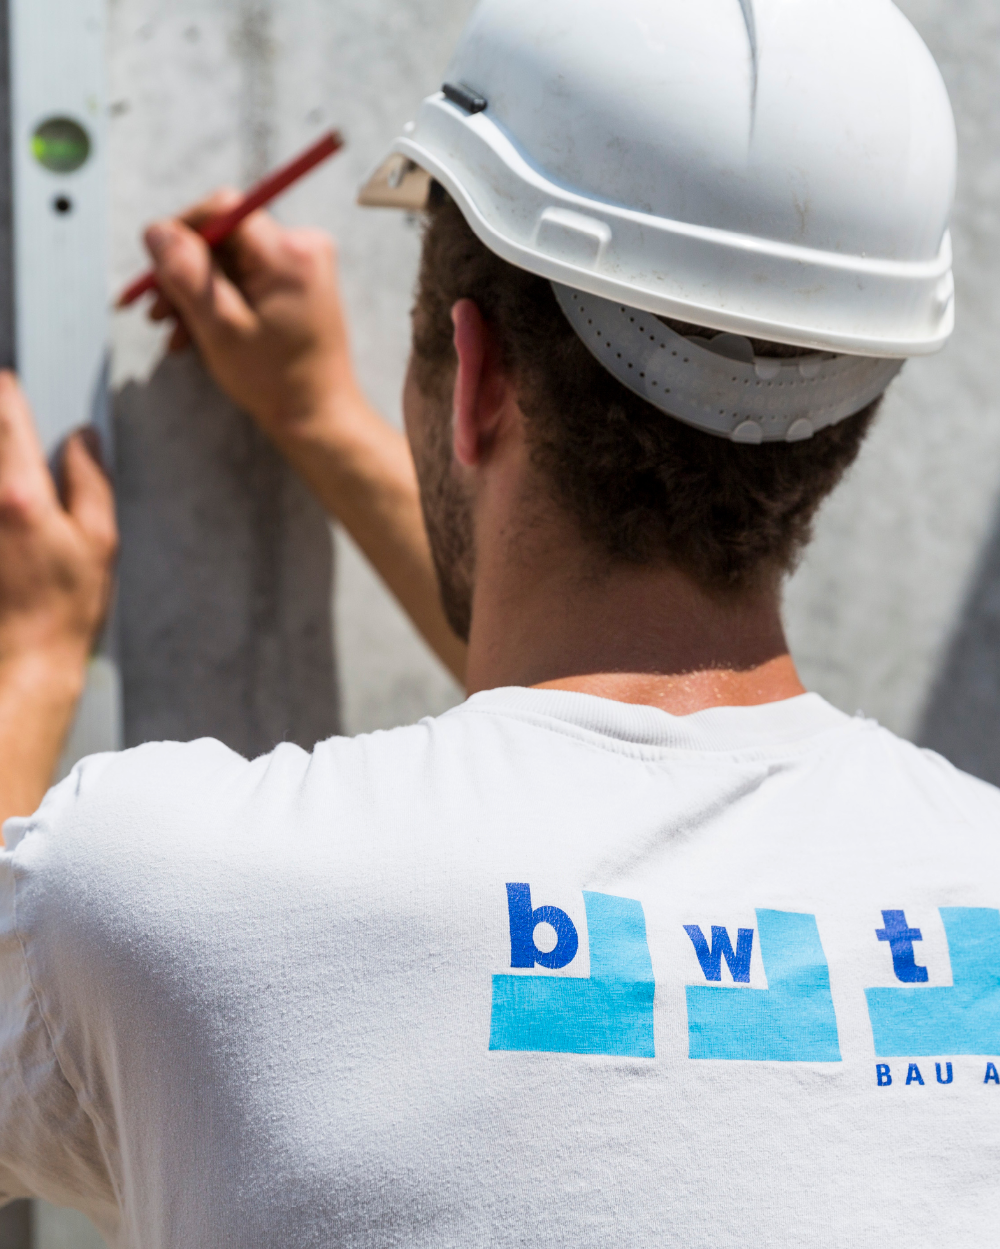 Mitarbeiter der BWT Bau AG mit Unternehmens-Logo auf dem T-Shirt